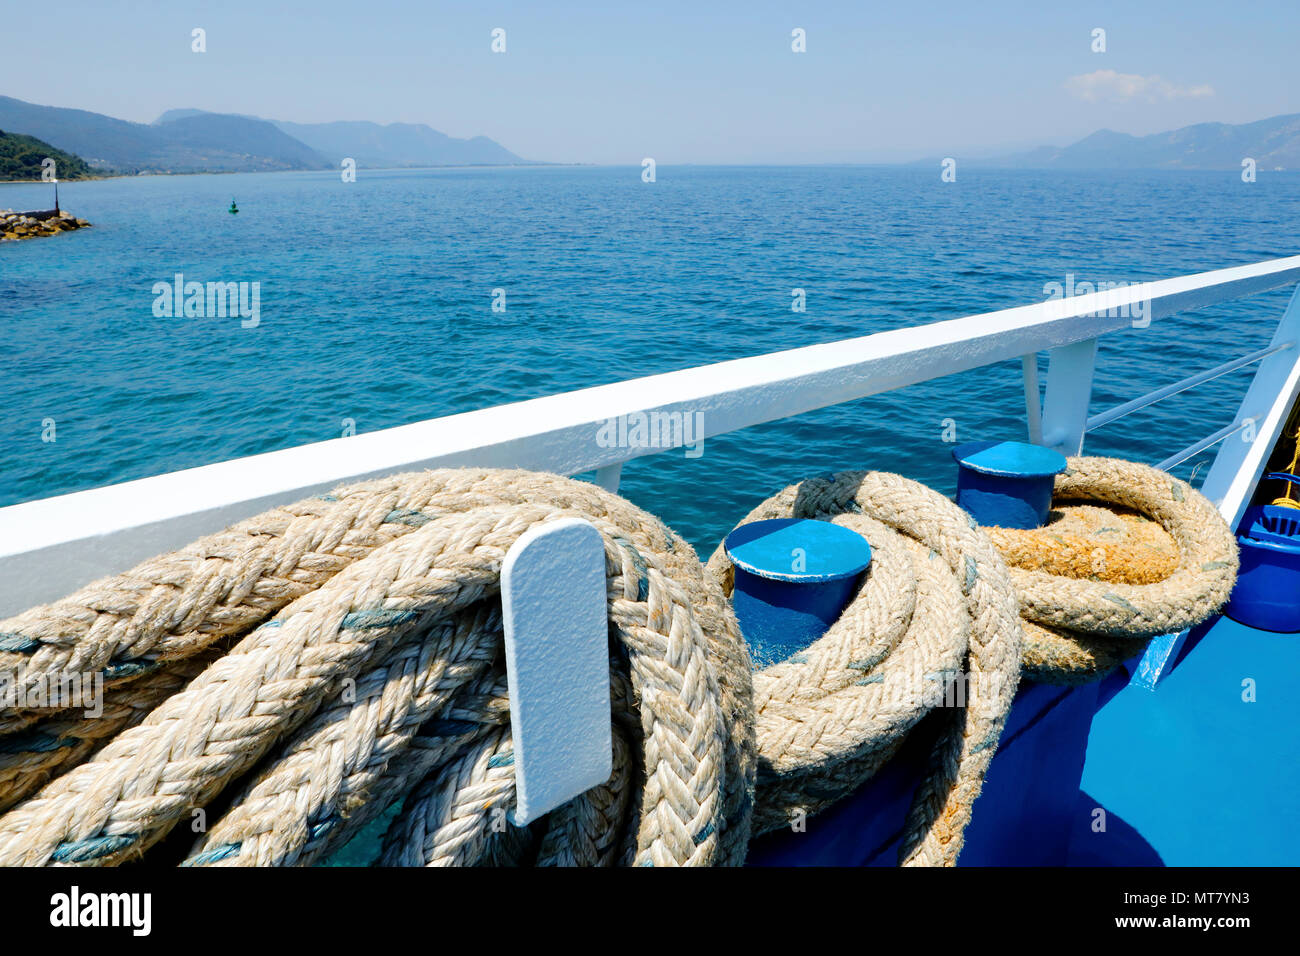 Viaggiare per mare. Vicino la fune di ancoraggio in corrispondenza di ferry boat deck e bellissima vista del mare con le montagne sullo sfondo a giornata di sole. Foto Stock